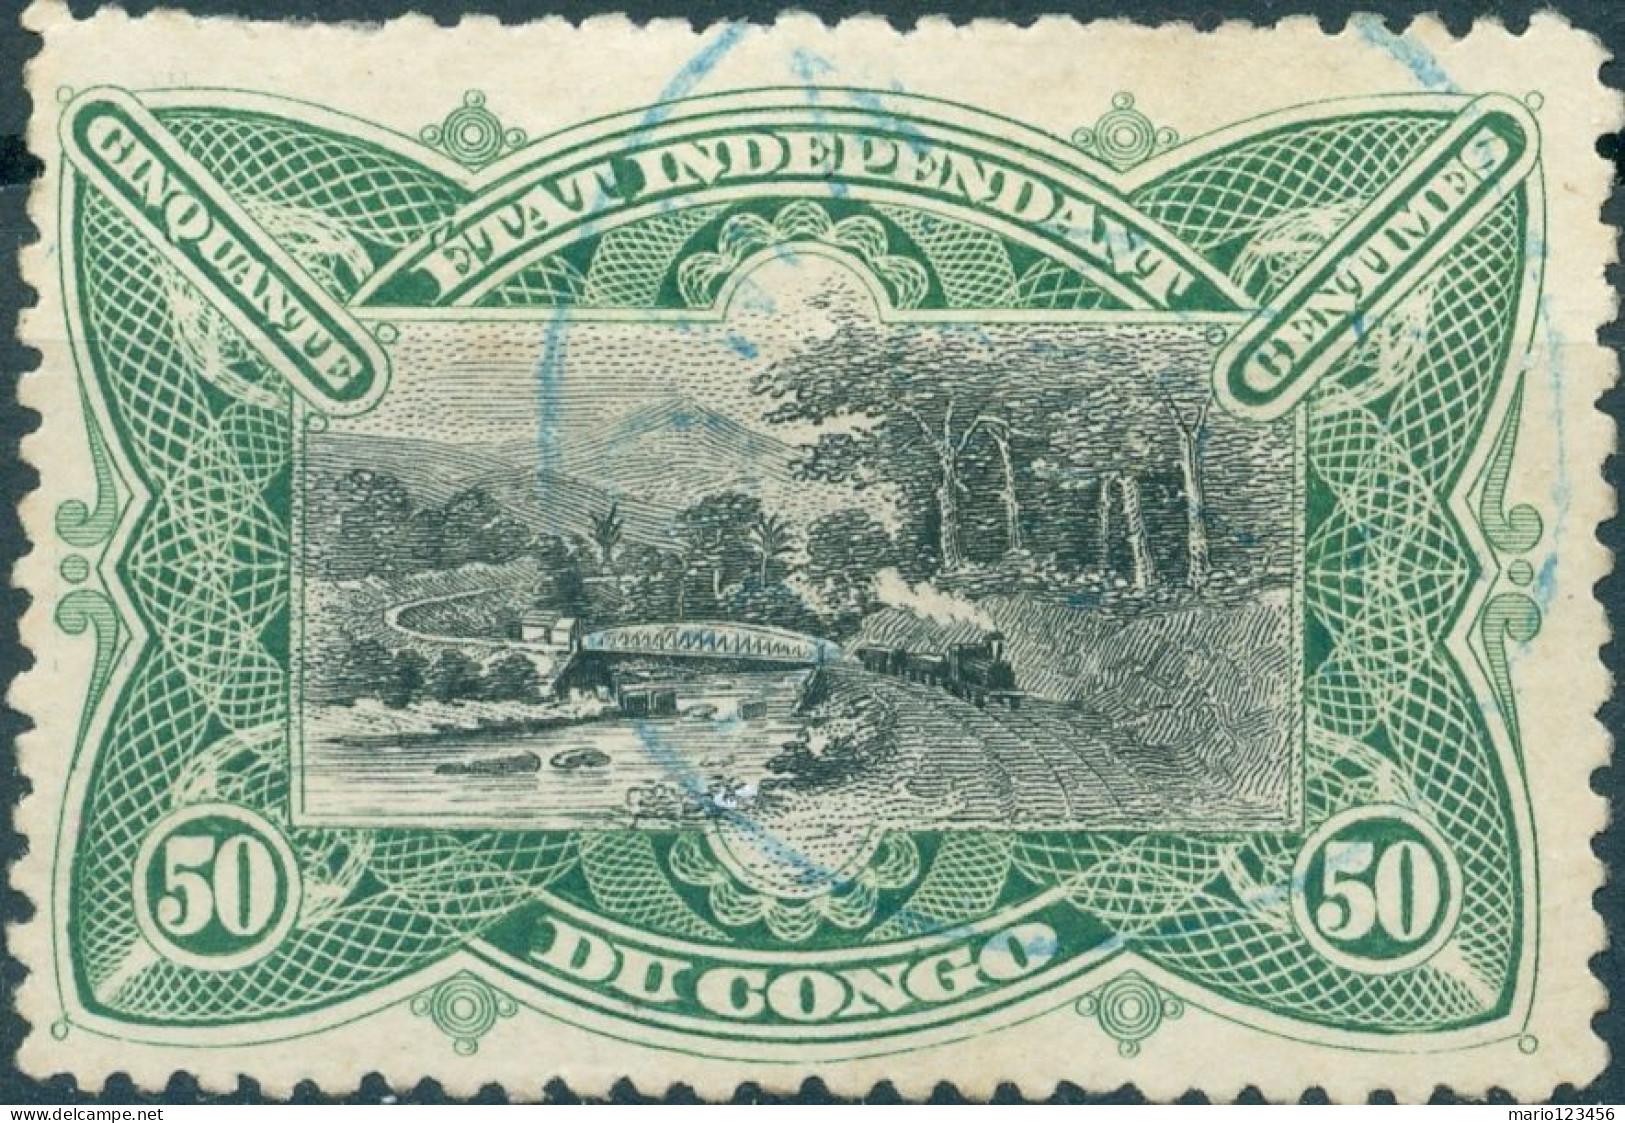 CONGO BELGA, BELGIAN CONGO, STATO LIBERO DEL CONGO, PAESAGGI, LANDSCAPE, 1894, 50 C., USATI Mi:CD-FS 17a, Scott:CD-FS 22 - Used Stamps